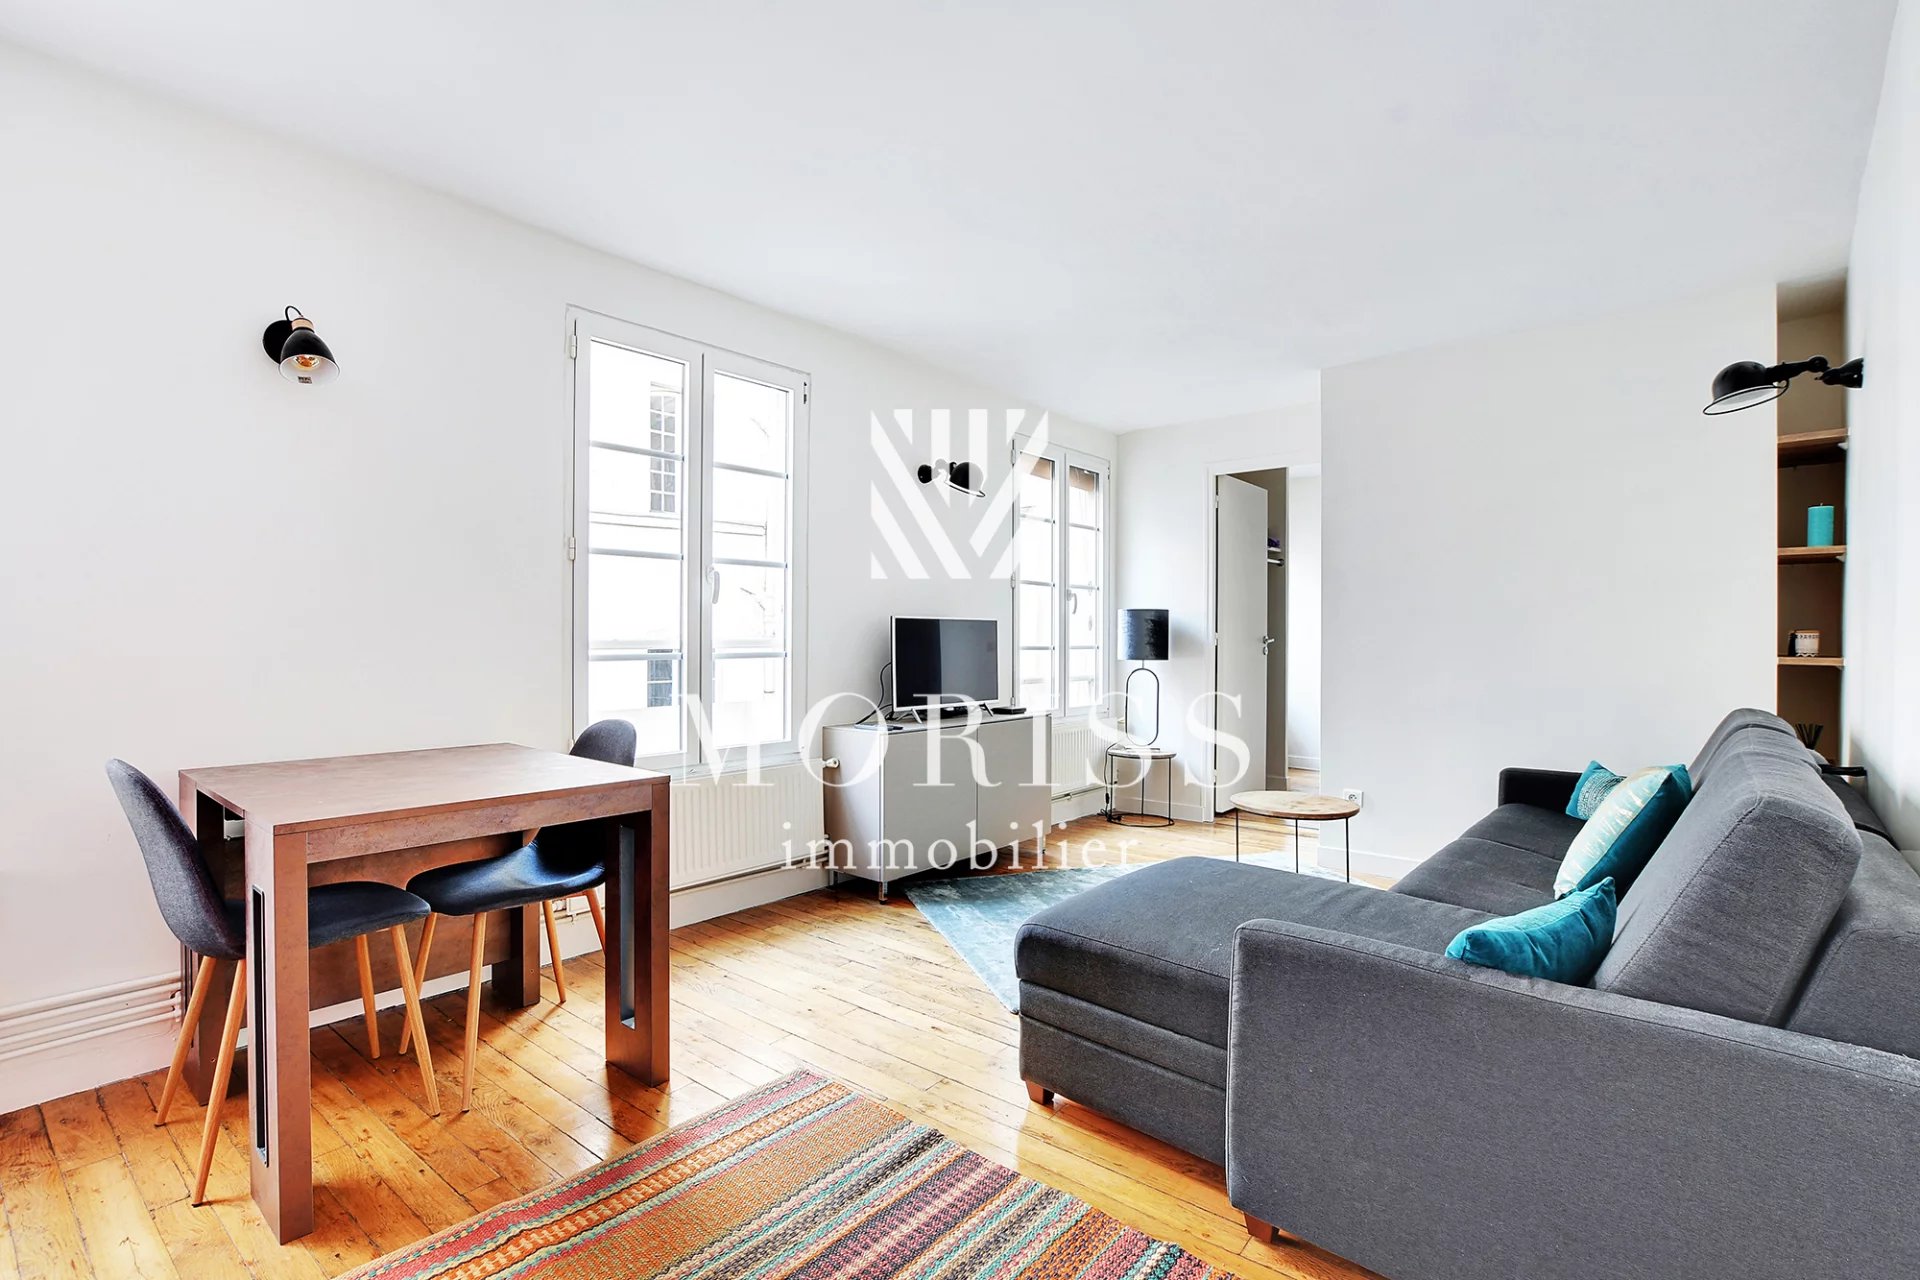 Appartement – 2 pièces – 39 M2 – Arts et Métiers - 75003 Paris - Image Array